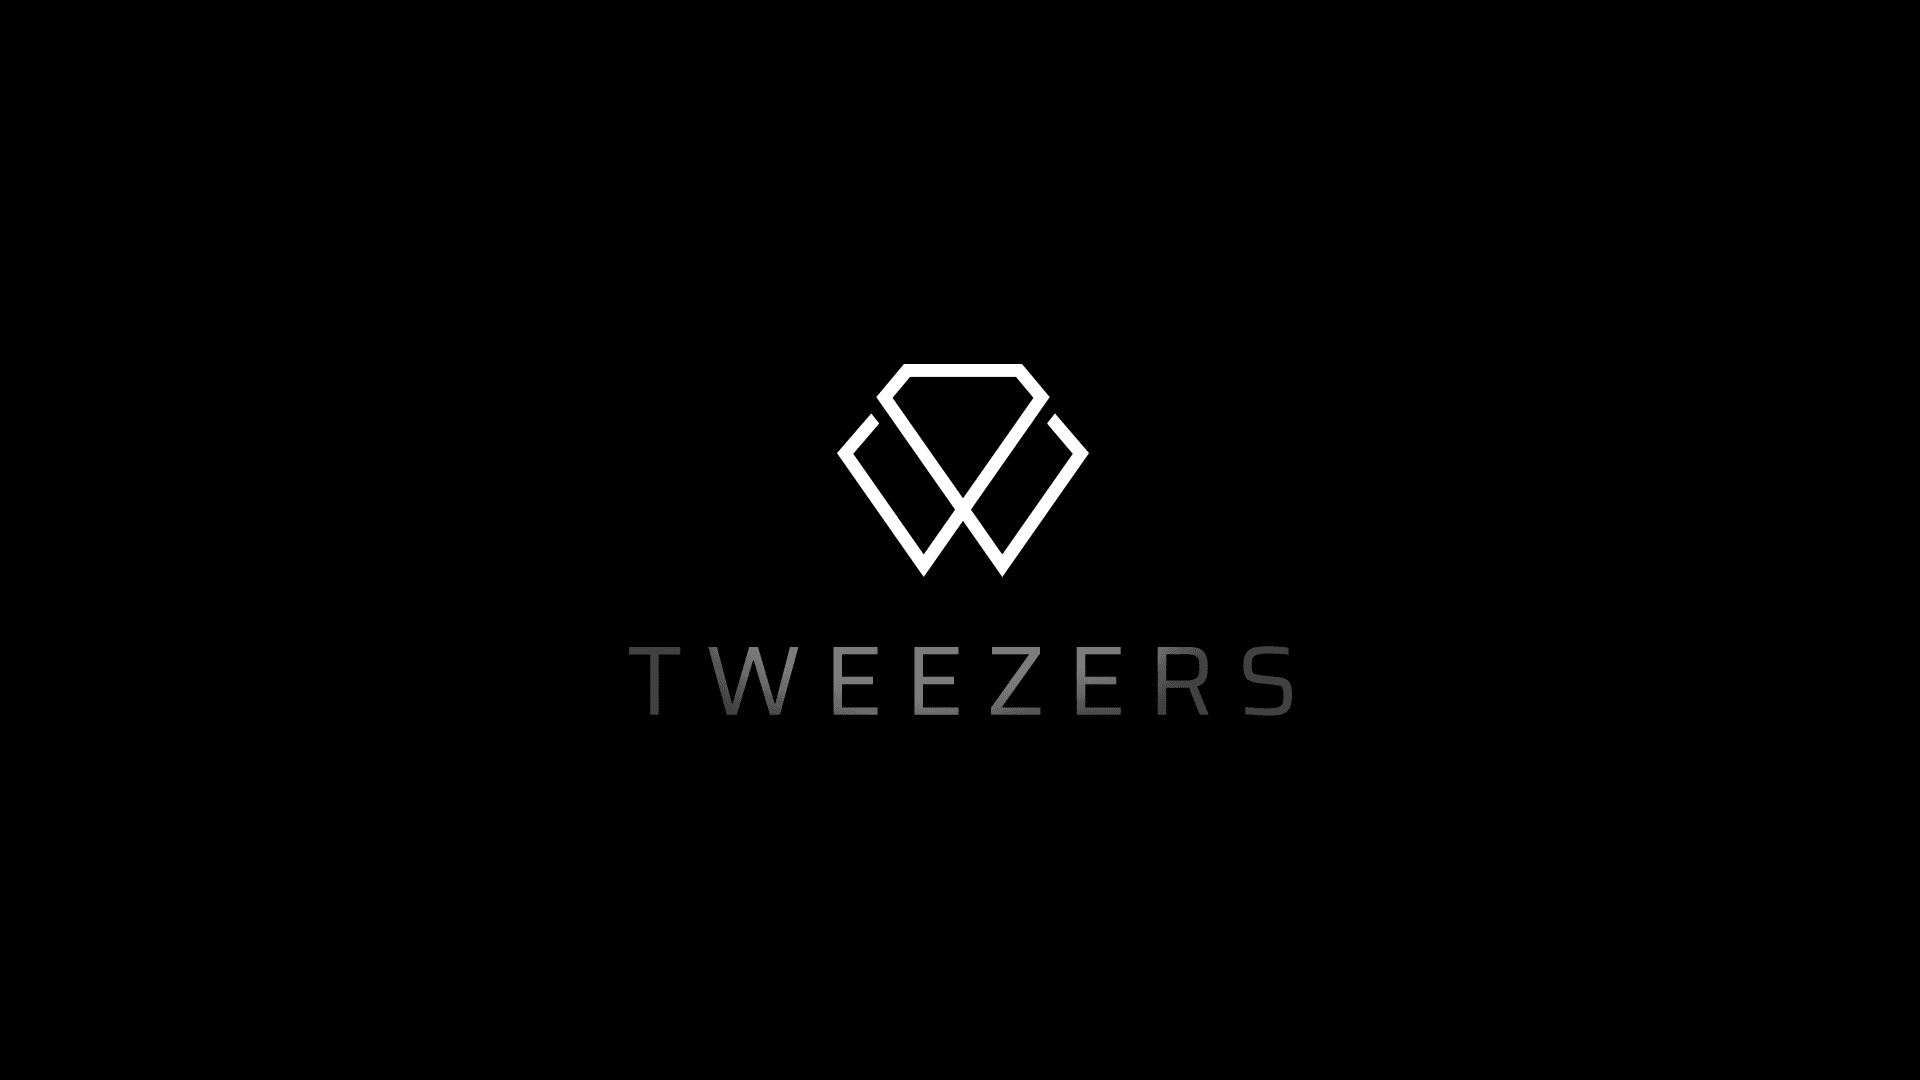 Tweezers